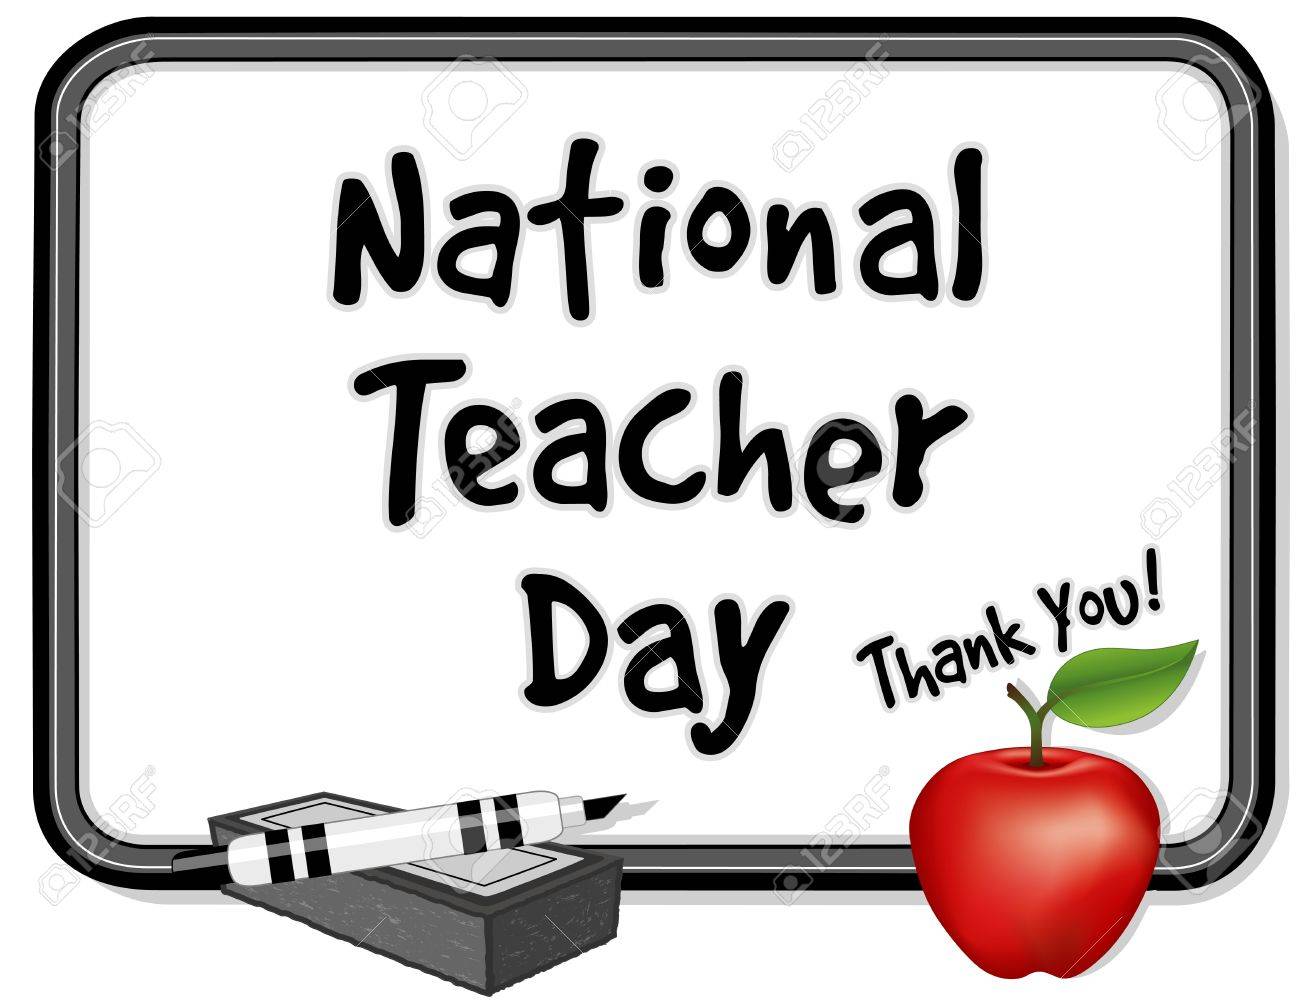 12797624-national-teacher-day.jpg